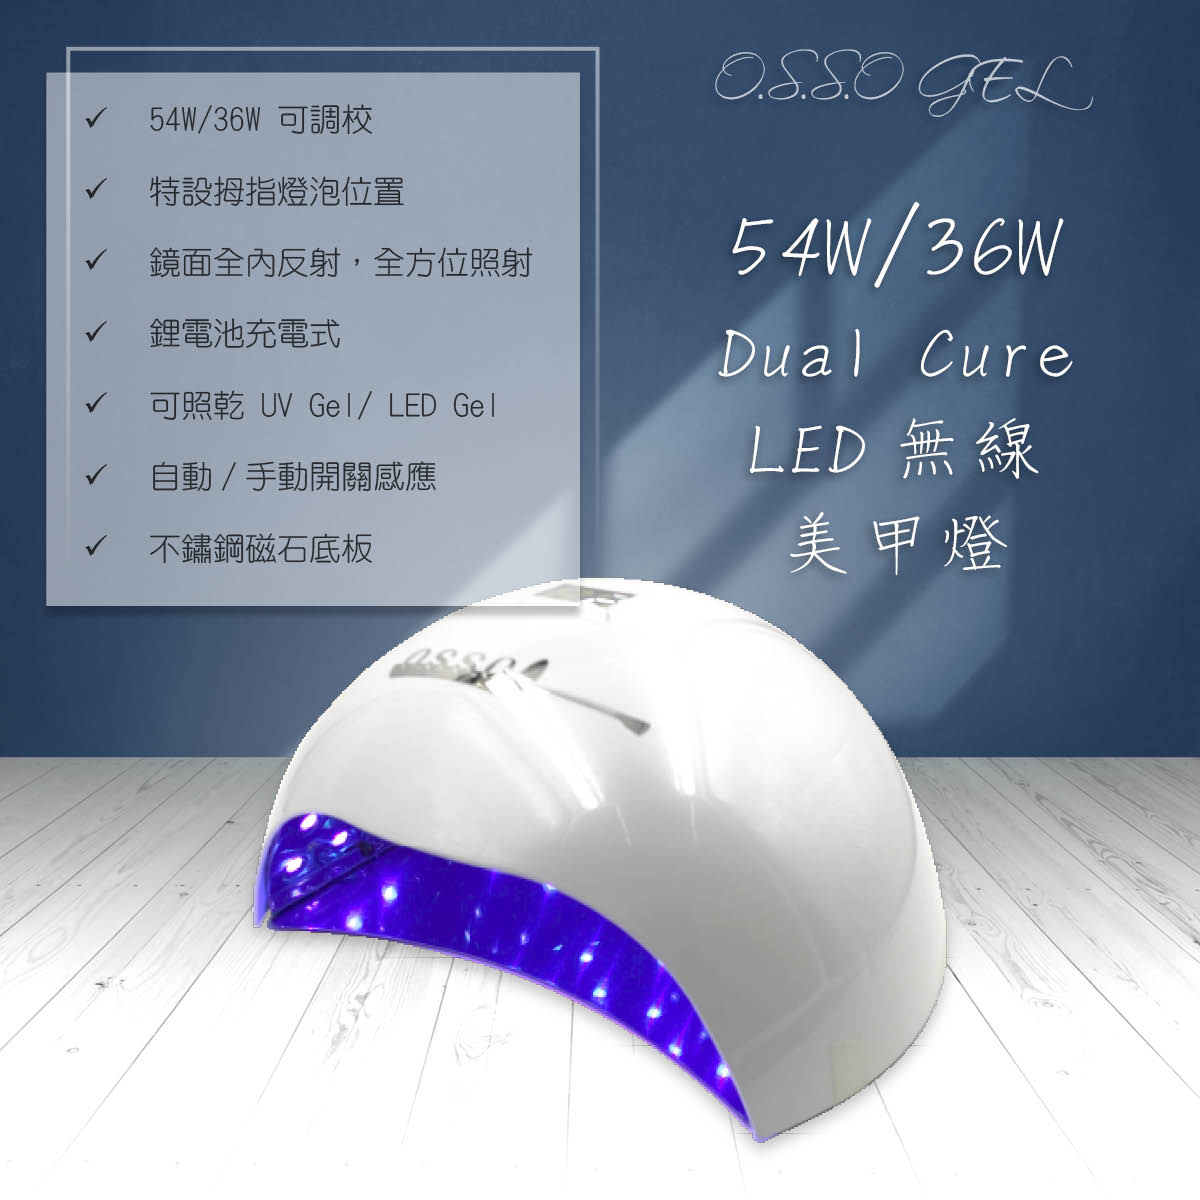 54W/36W Dual Cure LED 無線美甲燈